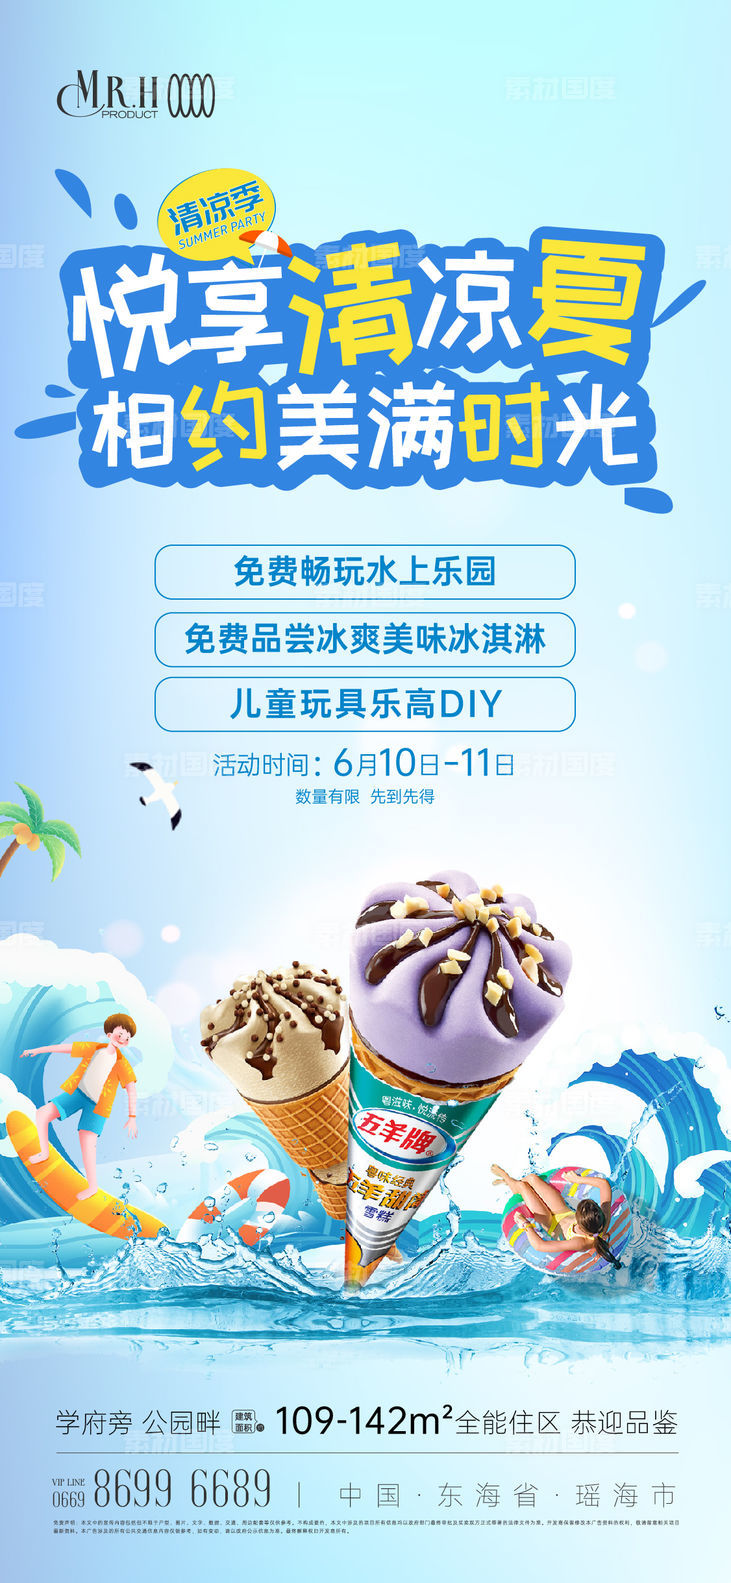 清凉夏日冰淇淋水上乐园活动